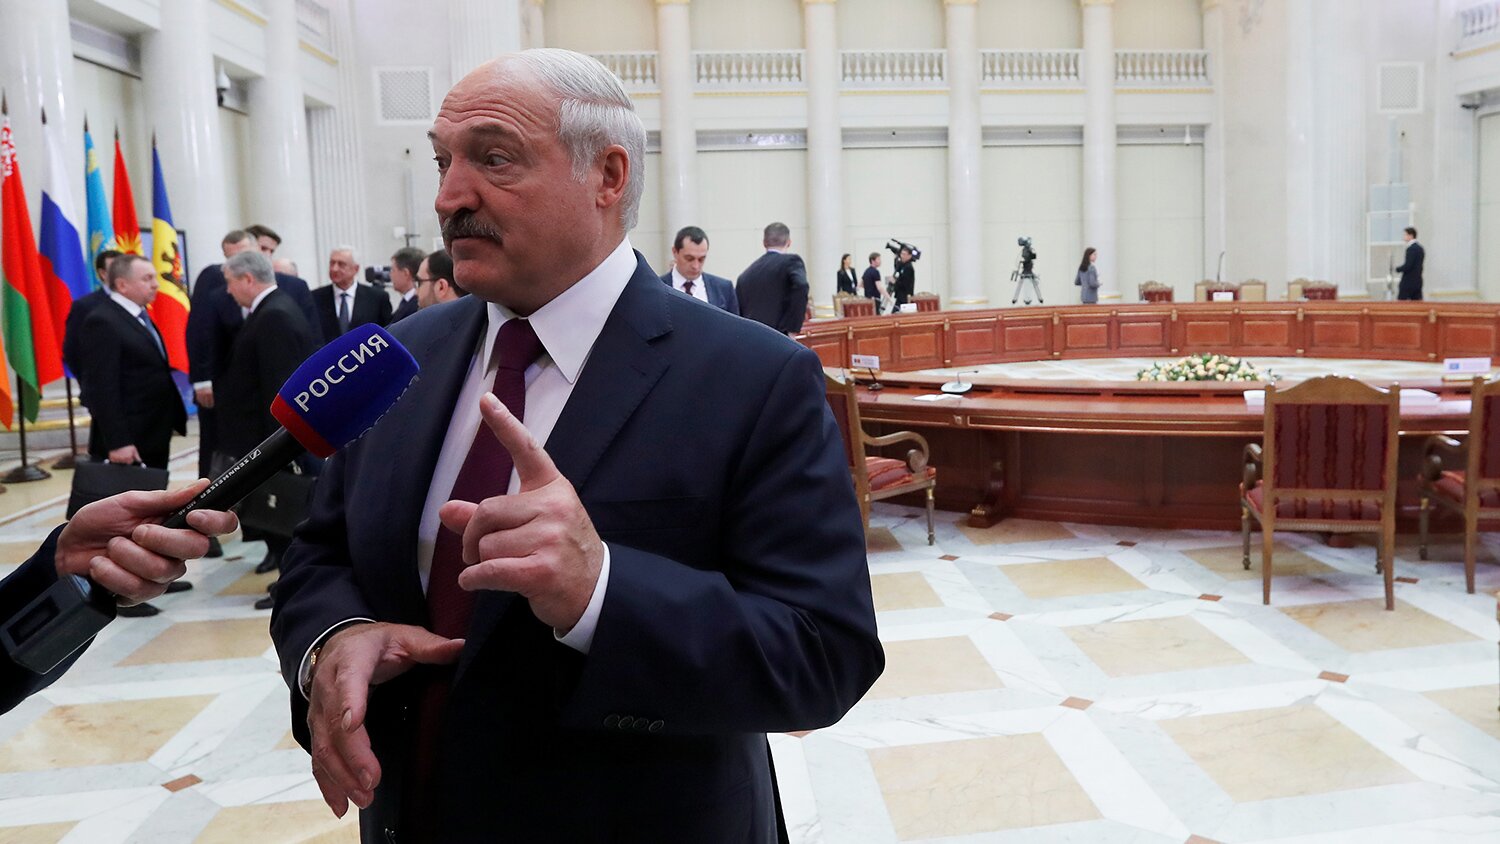 "Или американцы с натовцами, или из Украины", - Лукашенко призвал ждать пакостей с любой стороны